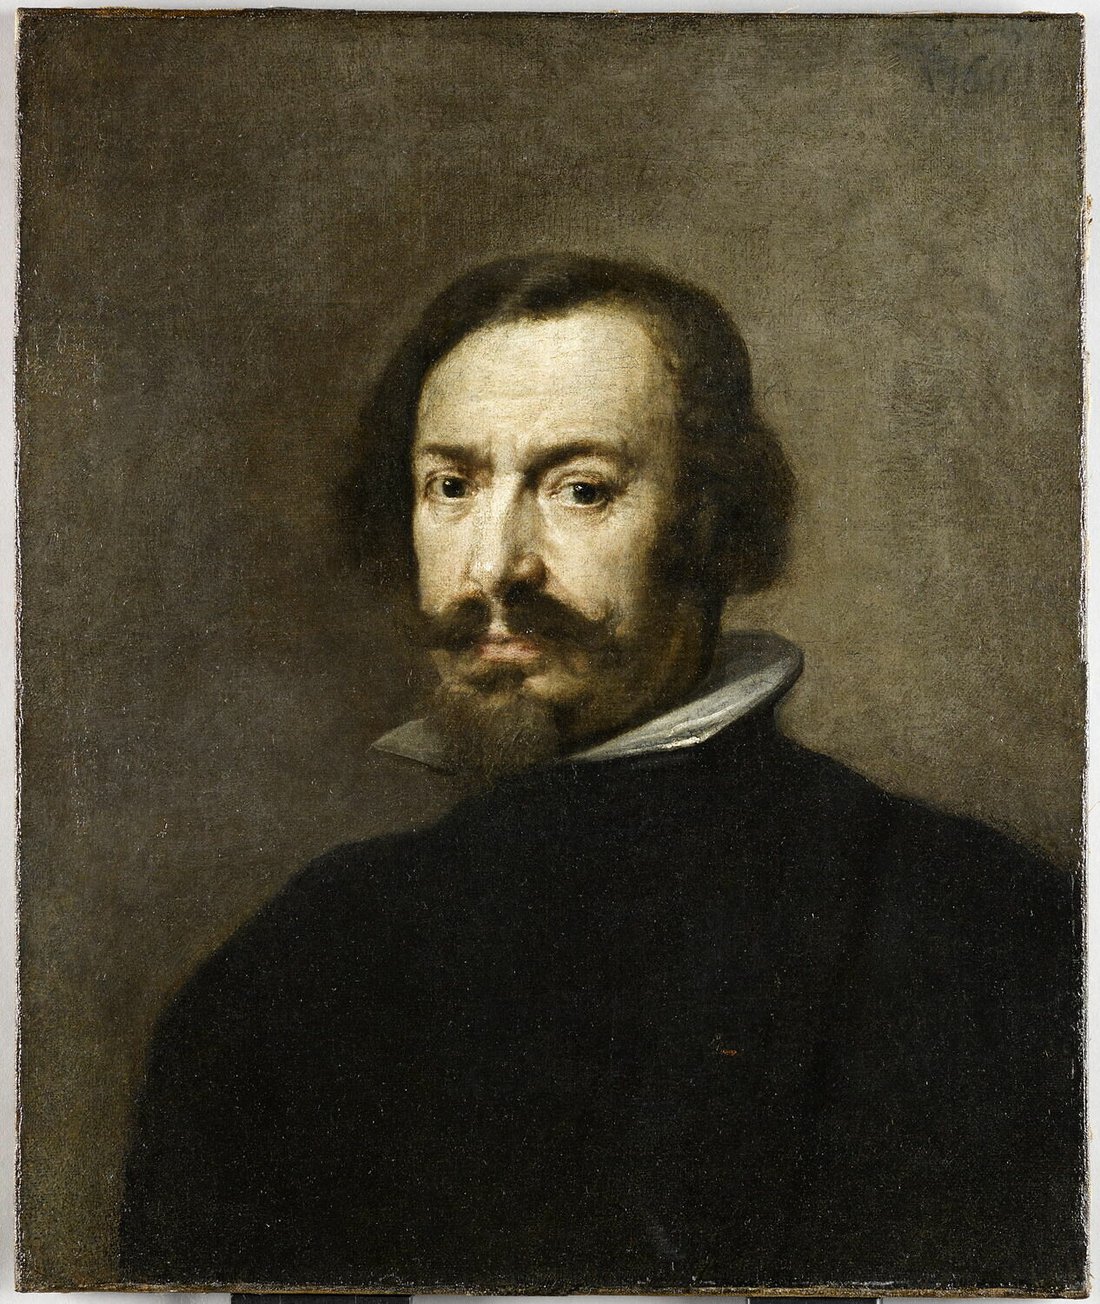 Antonio Pereda y Salgado (?), Portrait d'homme, 1655, Paris, Musée du Louvre © 2016 RMN-Grand Palais (musée du Louvre) / Franck Raux